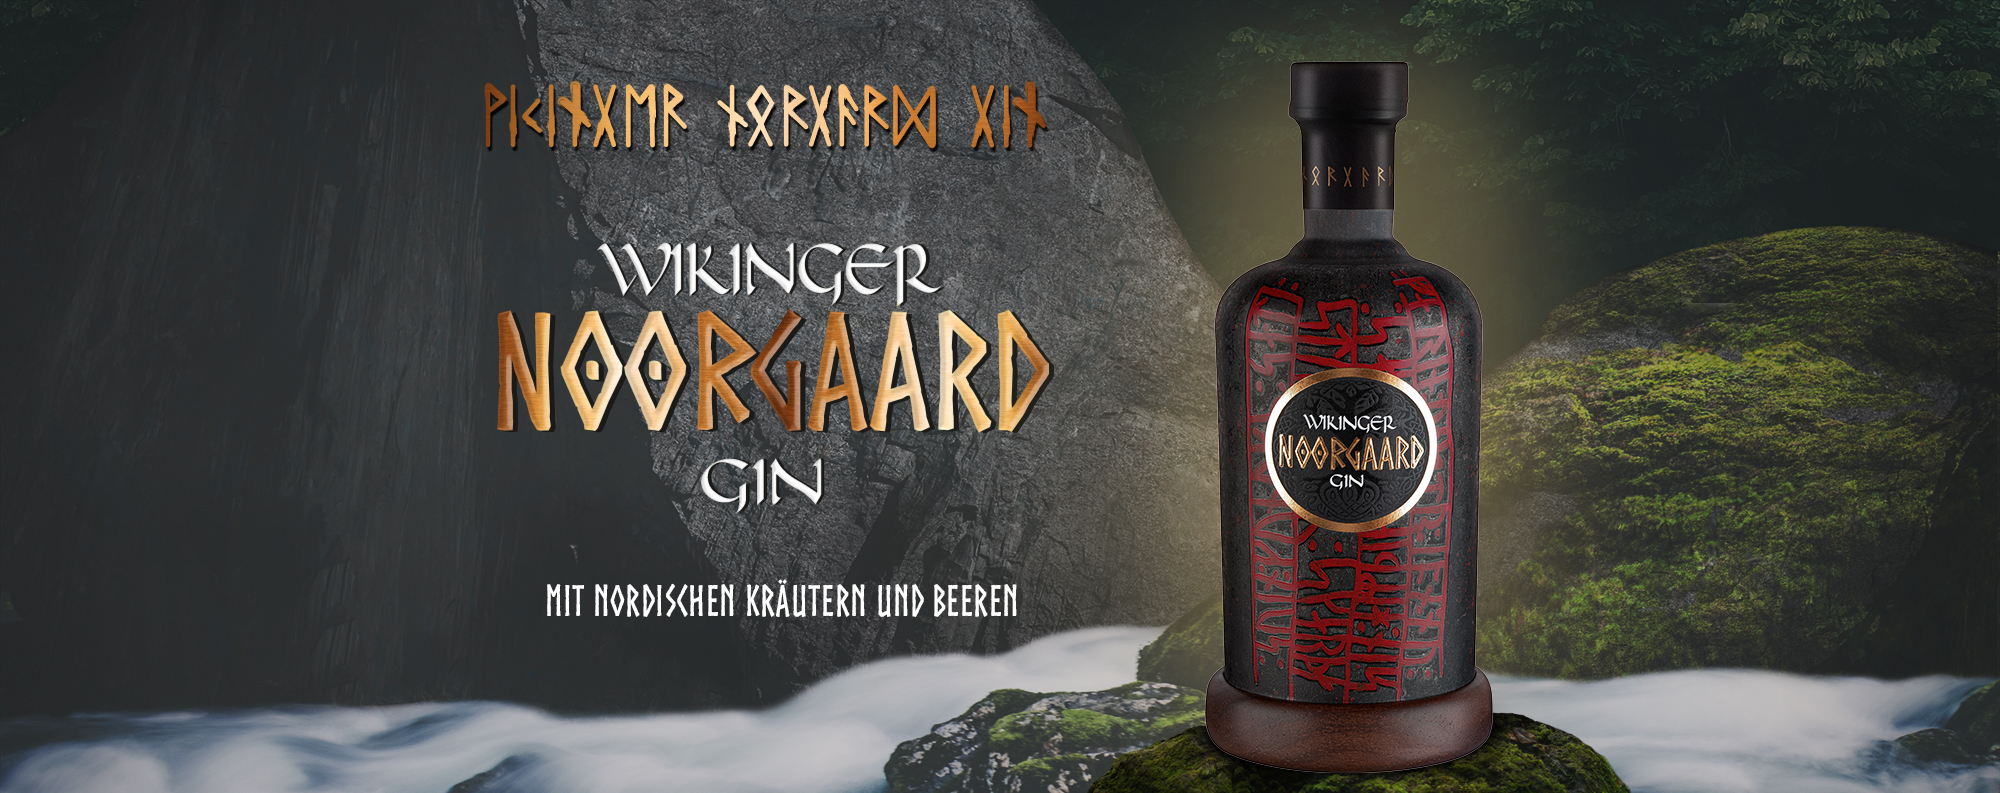 Wikinger_Gin_Noorgaard__Banner_Kategorie_2000x793